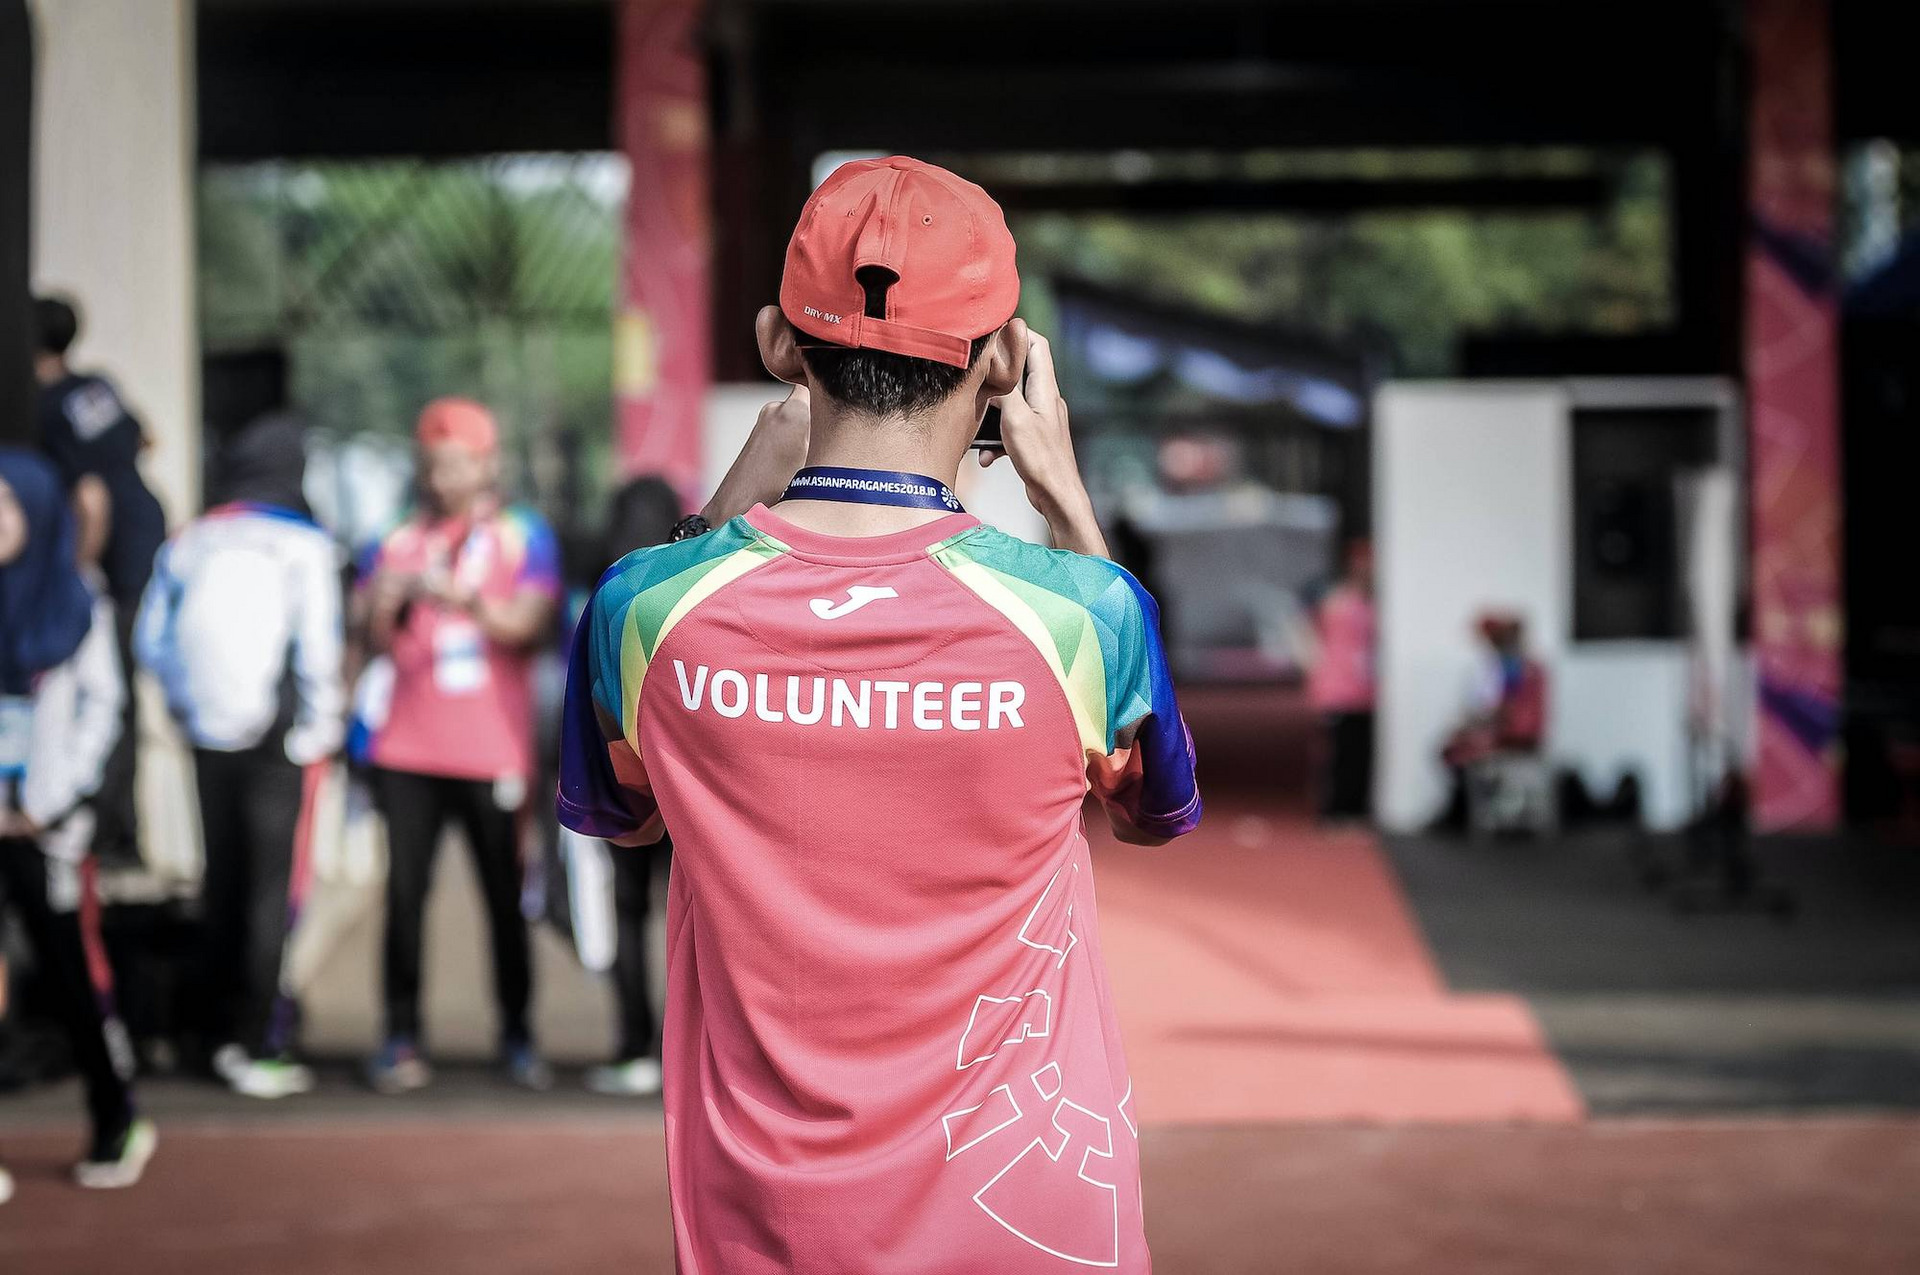 Eine Person mit der Aufschrift "Volunteer" (engl. "Freiwillige:r") steht mit dem Rücken zu uns und schießt ein Foto einer Szene im Hintergrund